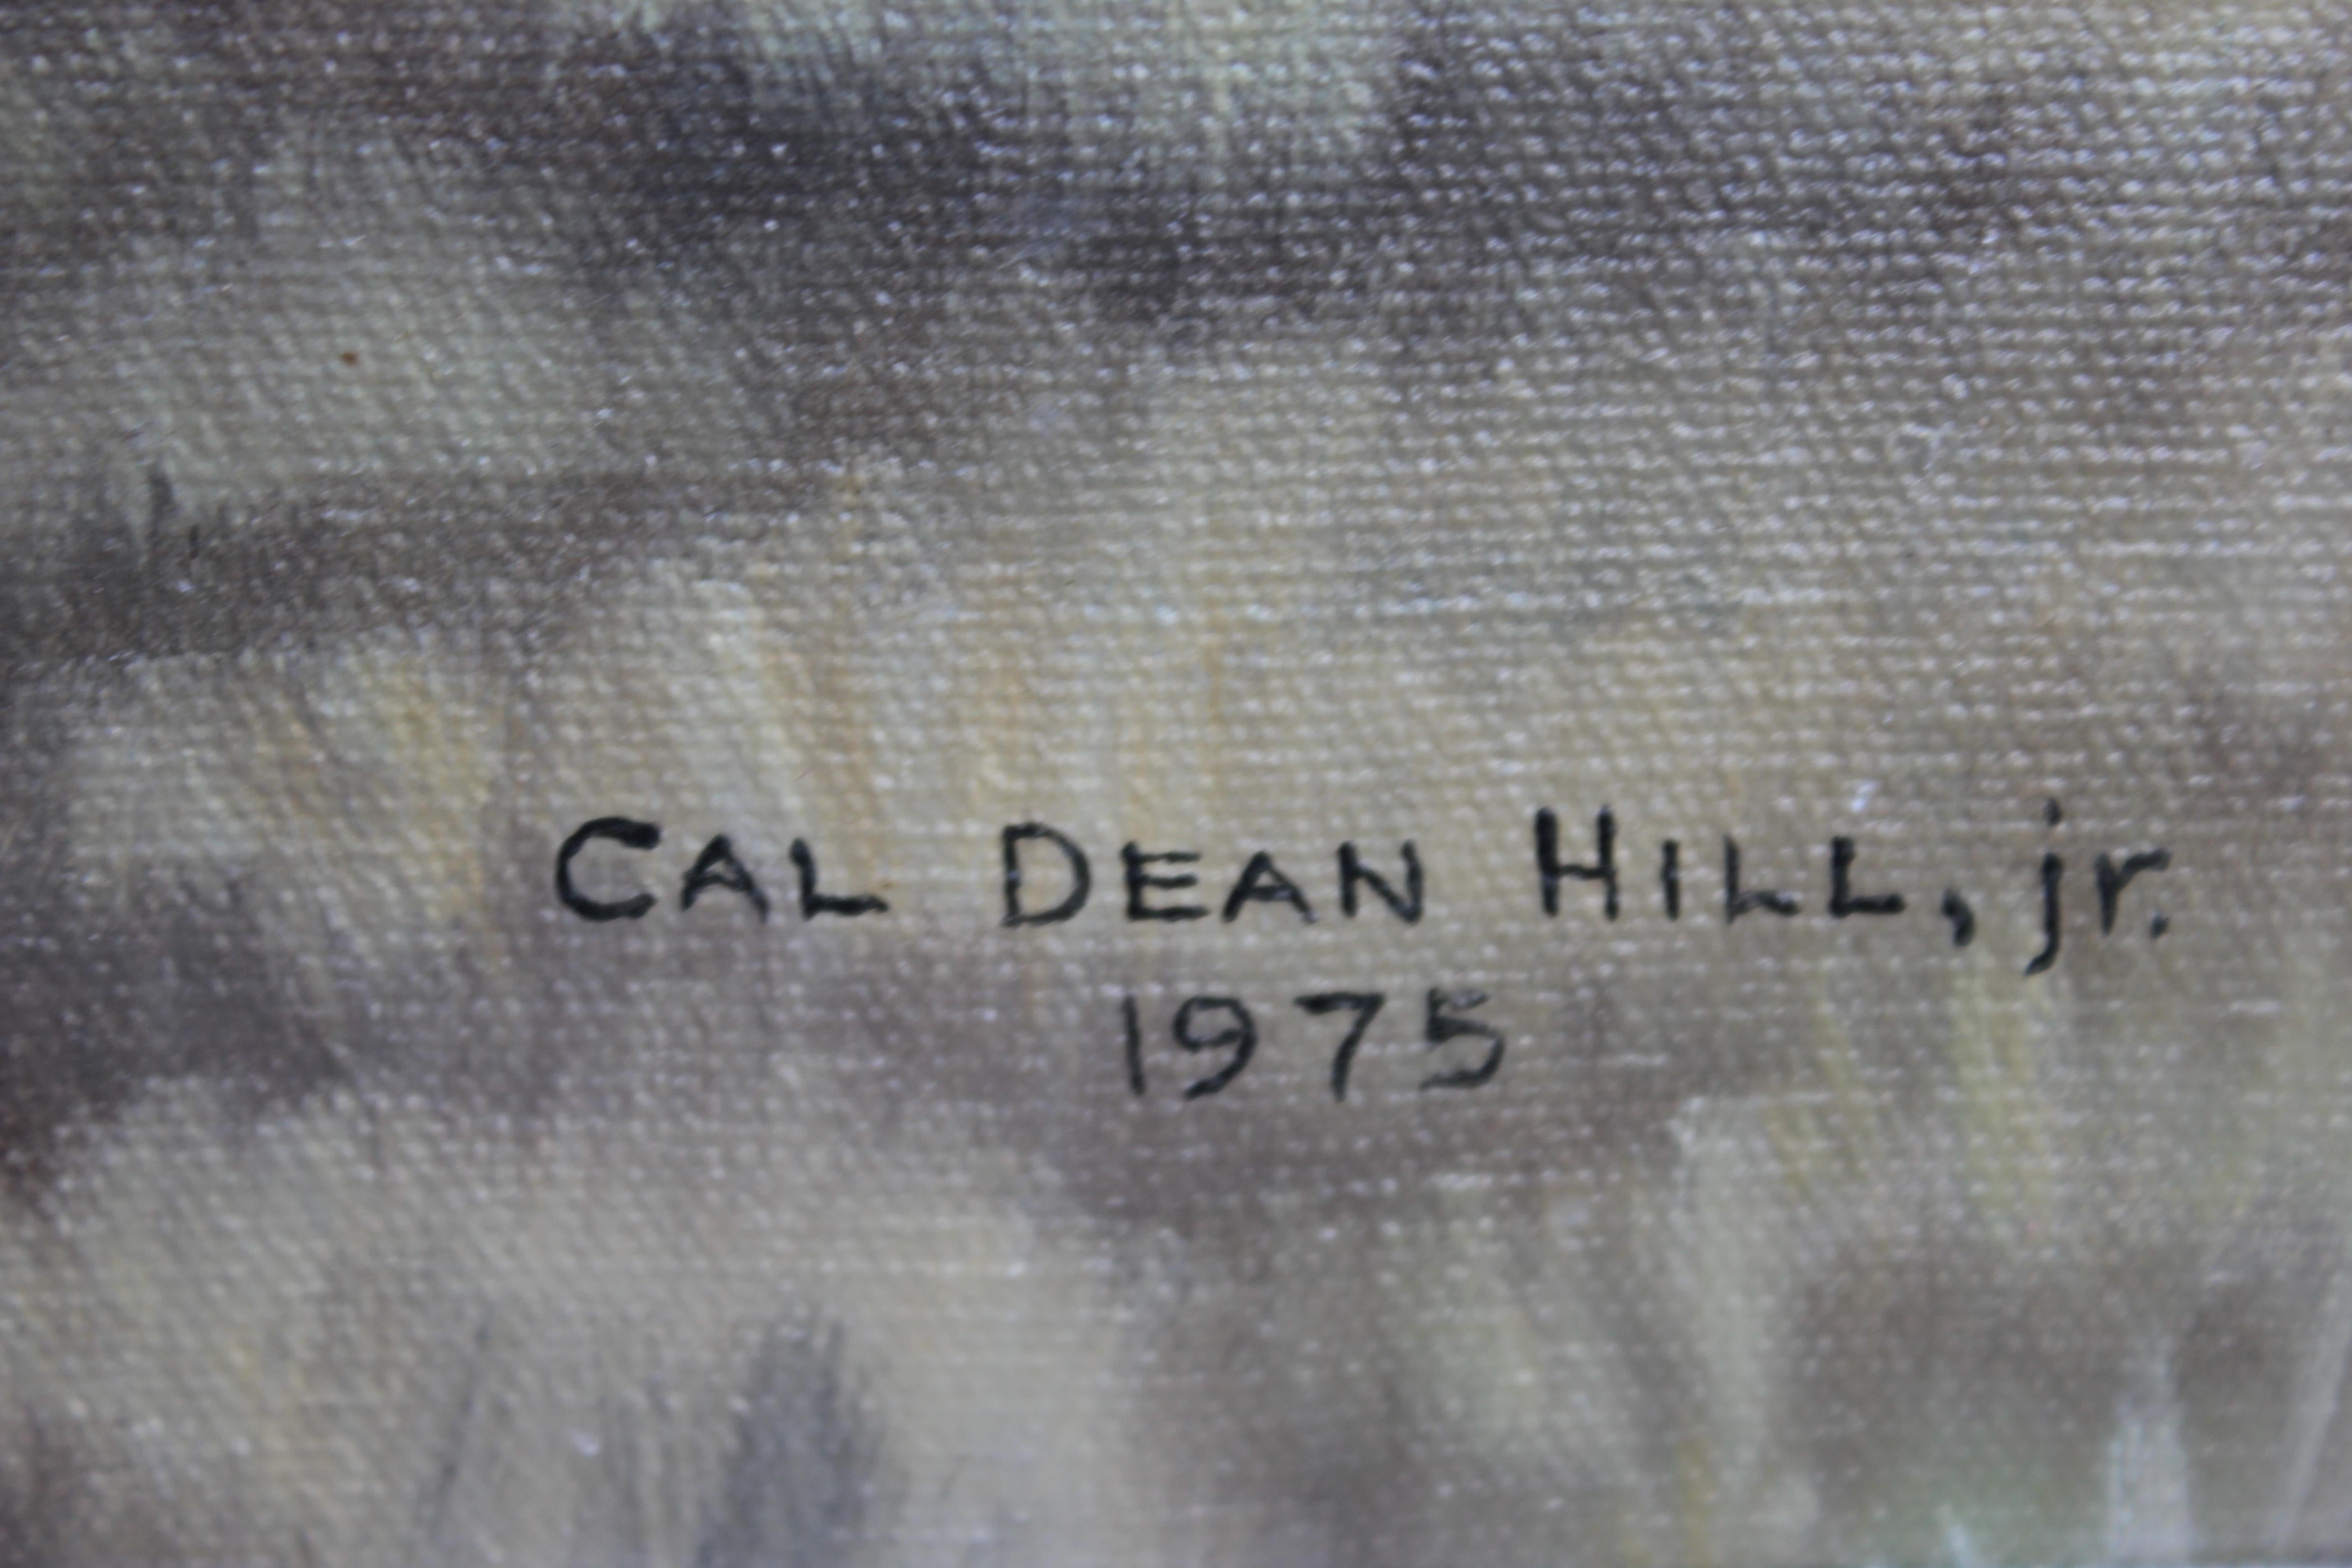 Realistisches Ölgemälde einer Wüstenlandschaft mit Gabelbockantilopen und einer Bergkette in der Ferne von Cal Dean Hill Jr. aus Houston aus dem Jahr 1975. Signiert und datiert in der rechten unteren Ecke. Aufgehängt in einem zweifarbigen Rahmen in